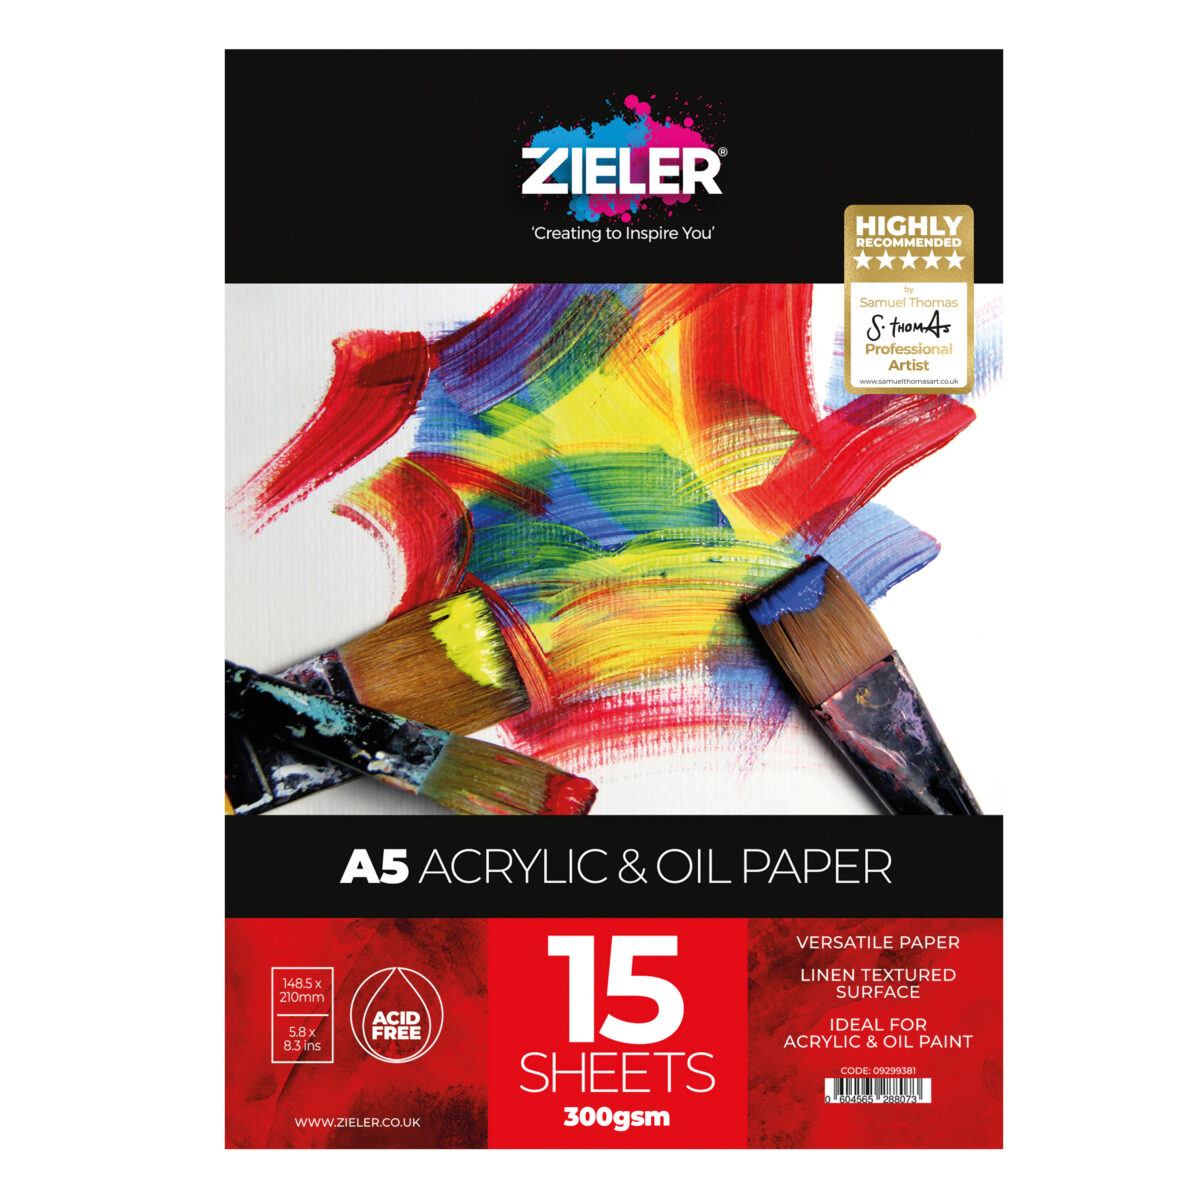 A5 Acrylic 1 - Zieler Art Supplies